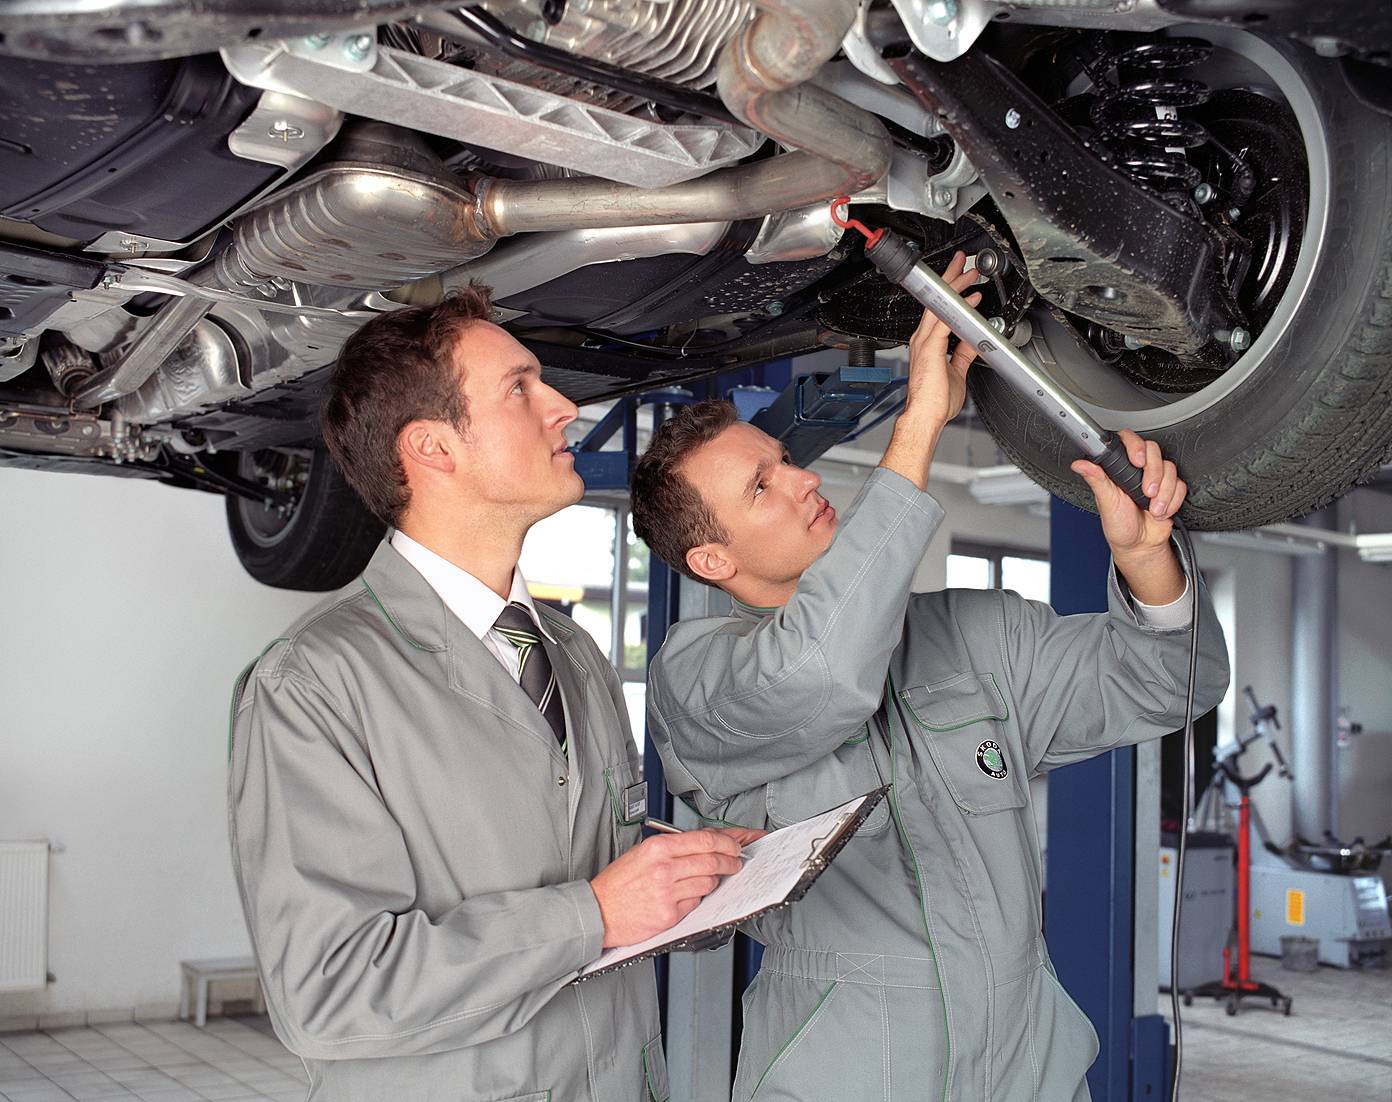 Техническое обслуживание автомобиля - ео, то 1, то 2, со. что ремонтировать?